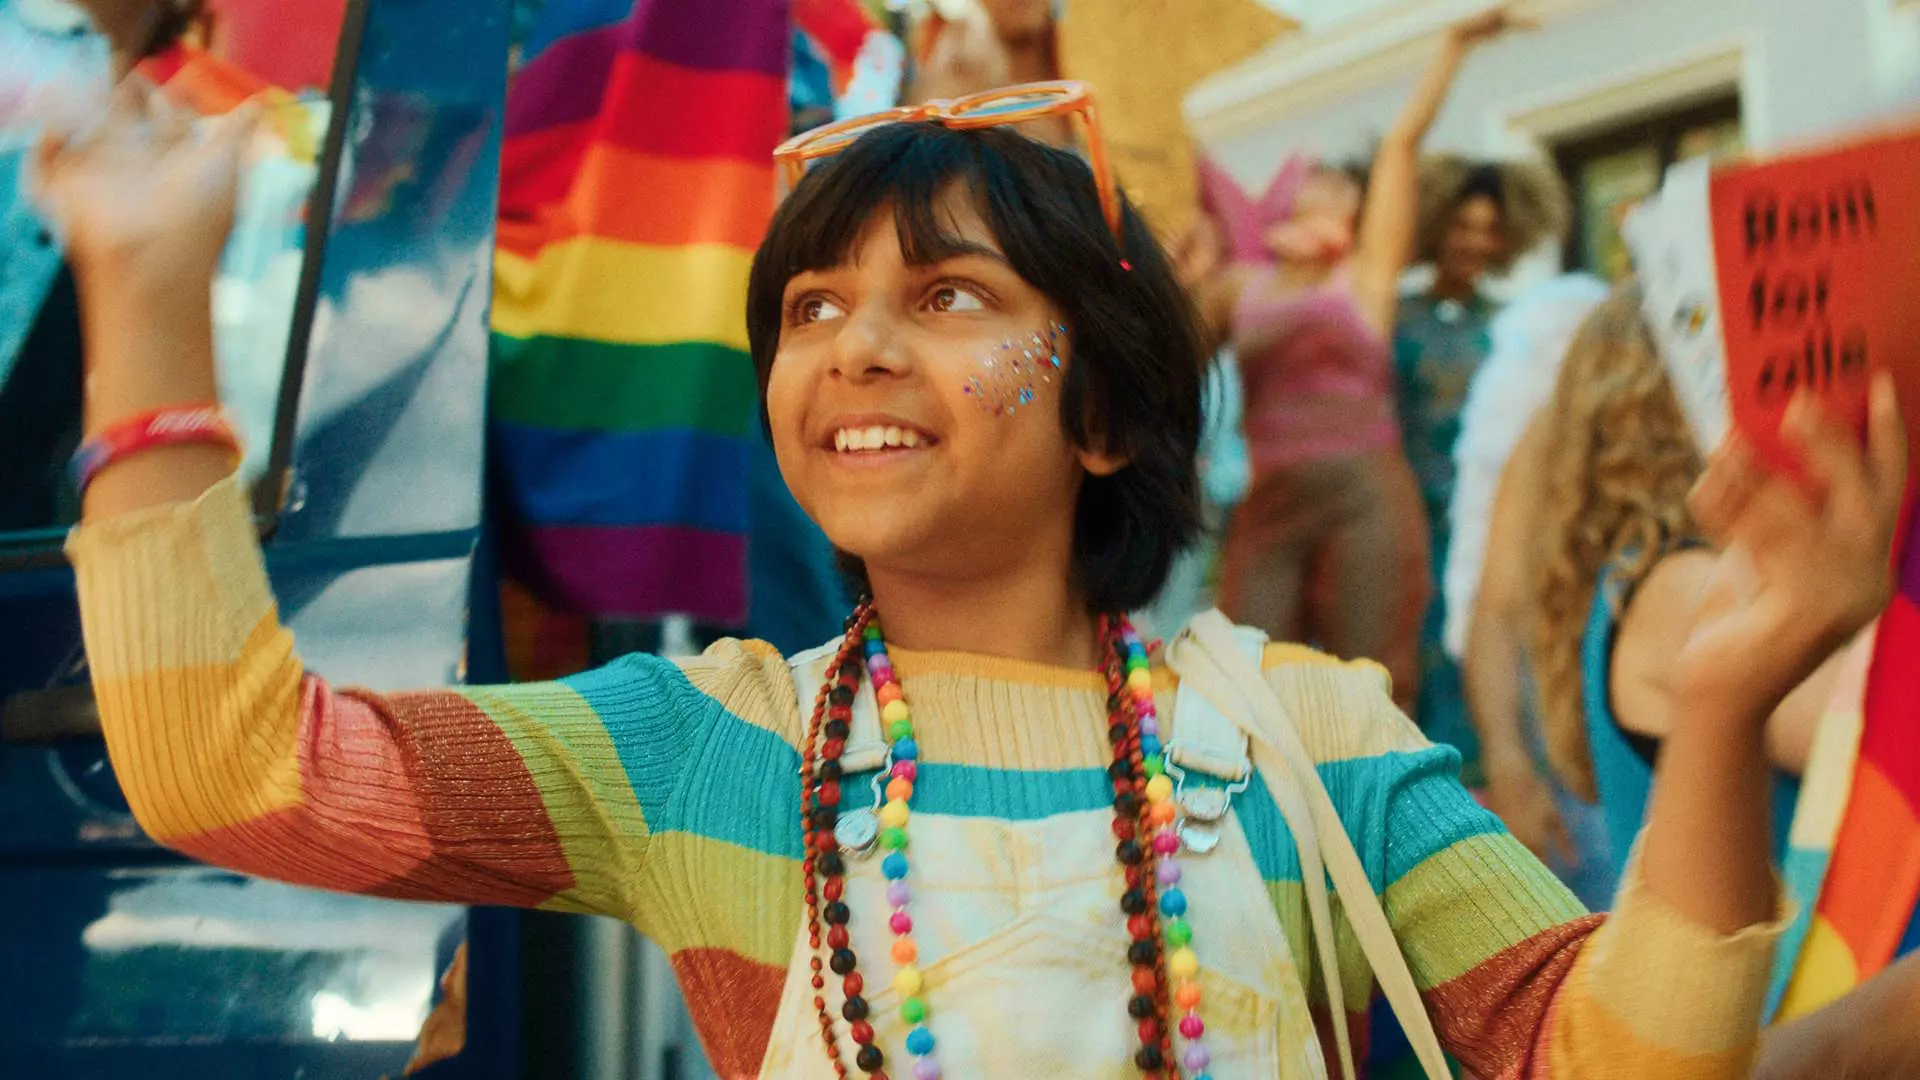 Halvnært bilde av 9 år gammel pakistansk gutt som er født i feil kropp som går i pride-parade. Feststemning. Regnbueflagg.